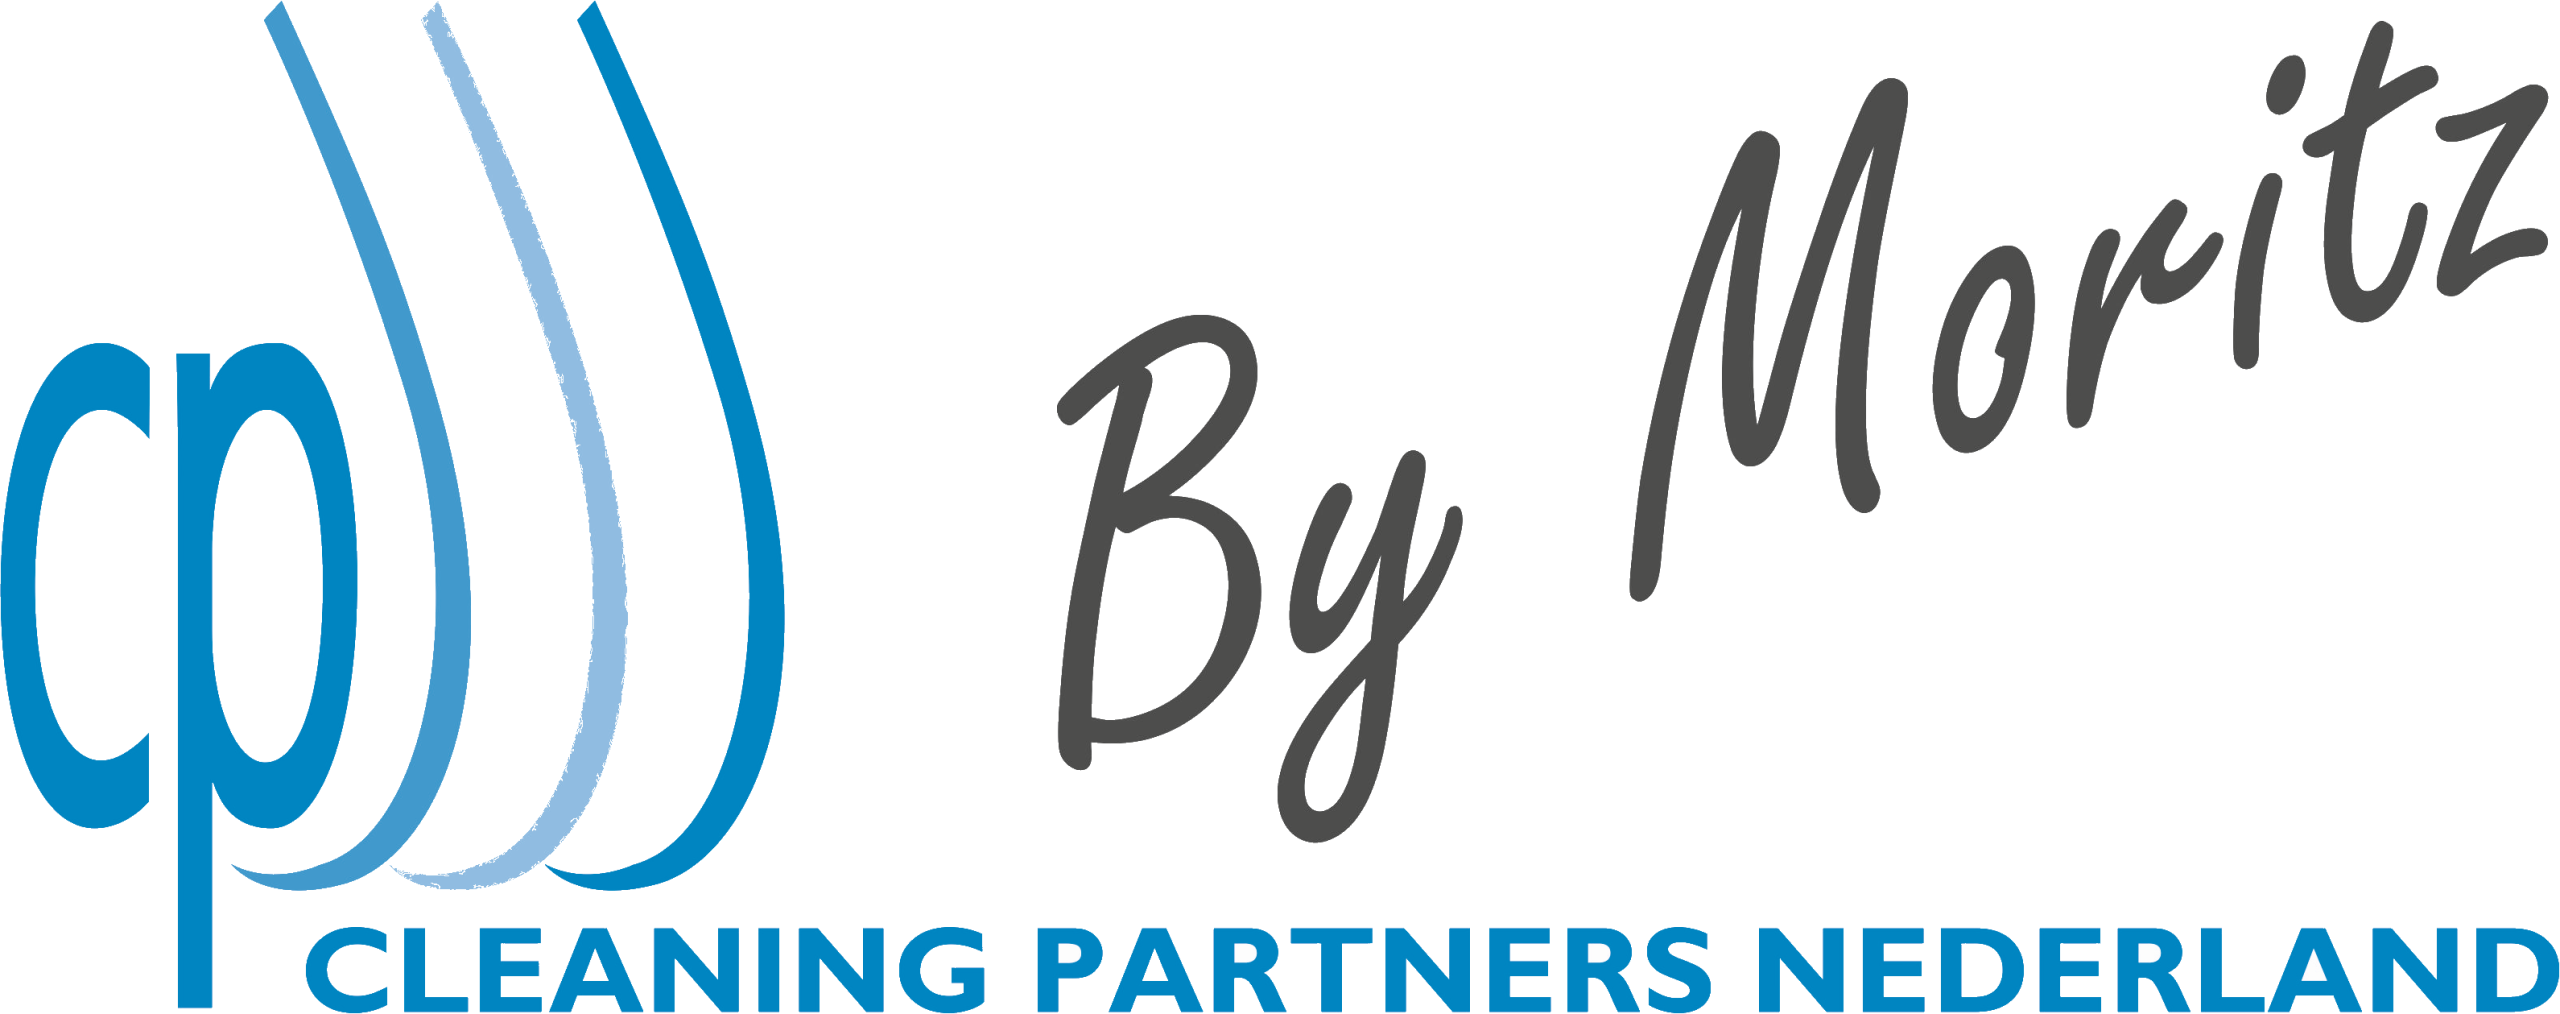 Cleaning-Partners-Nederland-schoonmaakbedrijf-logo